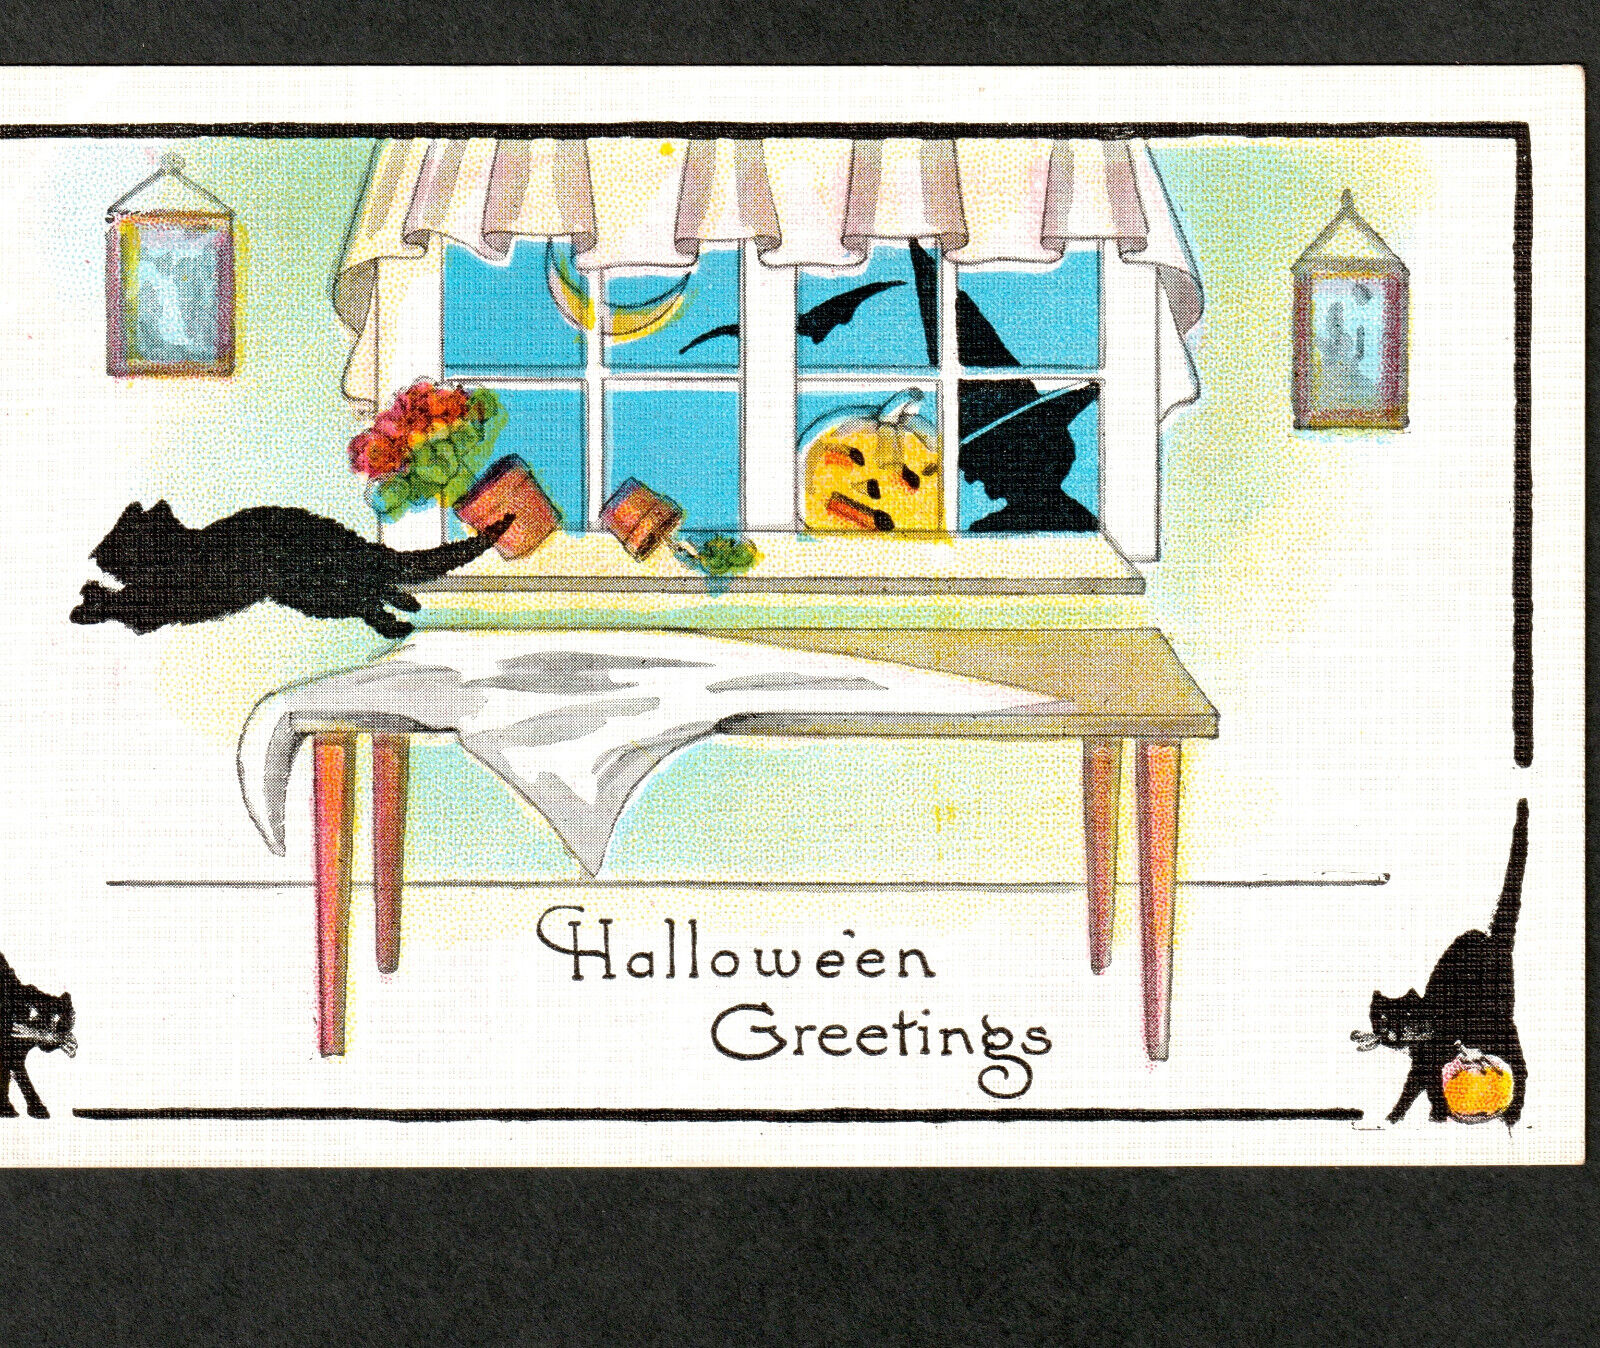 Witch Halloween Greetings Black Cat Pumpkin JOL Window UN 412 Bat Moon PostCard